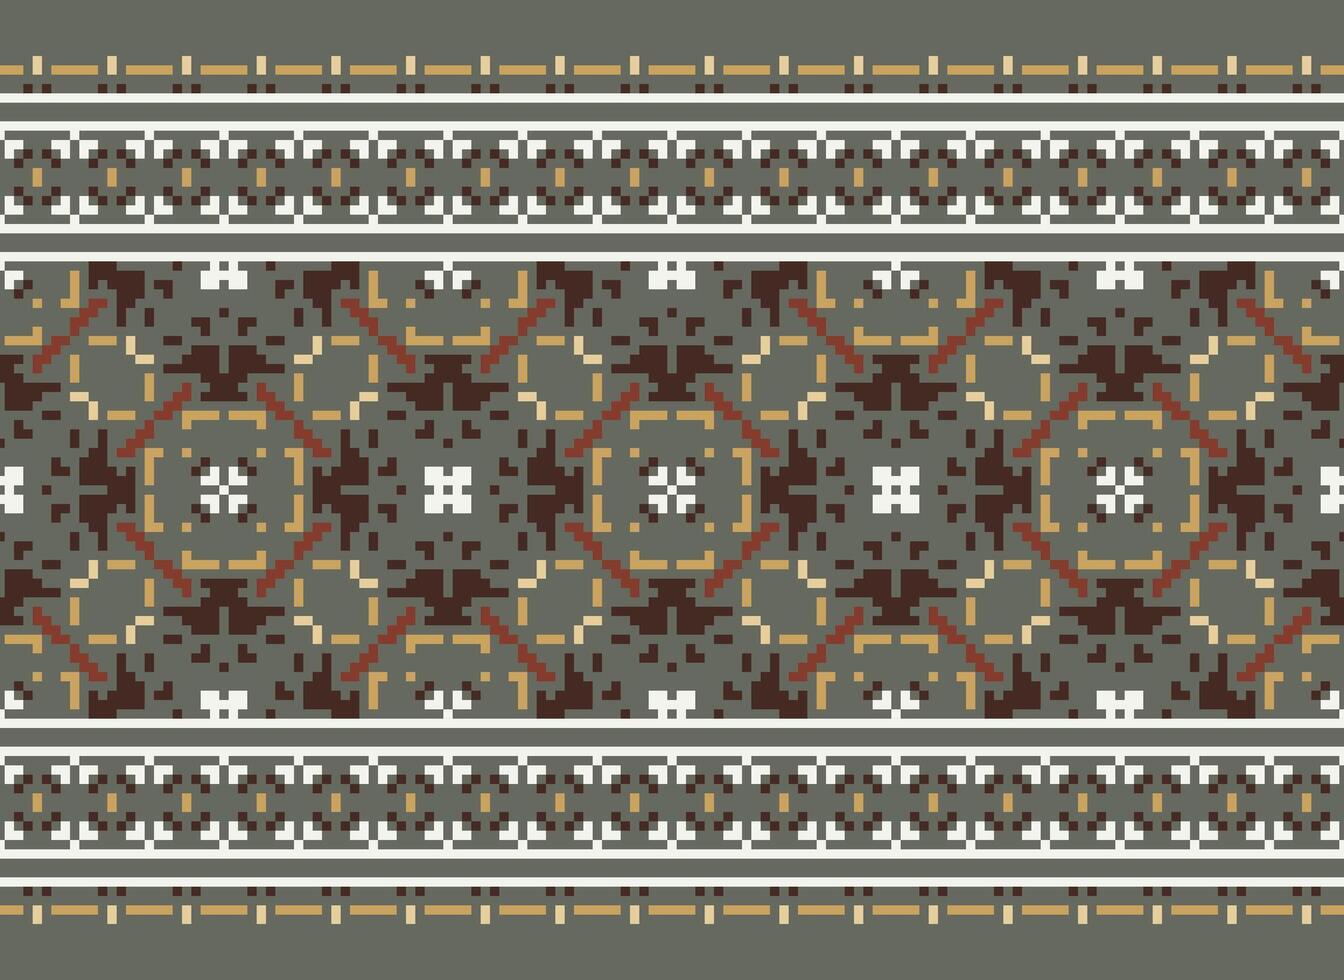 afrikansk korsa sy broderi på bakgrund.geometrisk etnisk orientalisk sömlös mönster traditionell.aztec stil abstrakt vektor illustration.design för textur, tyg, kläder, inslagning, matta.